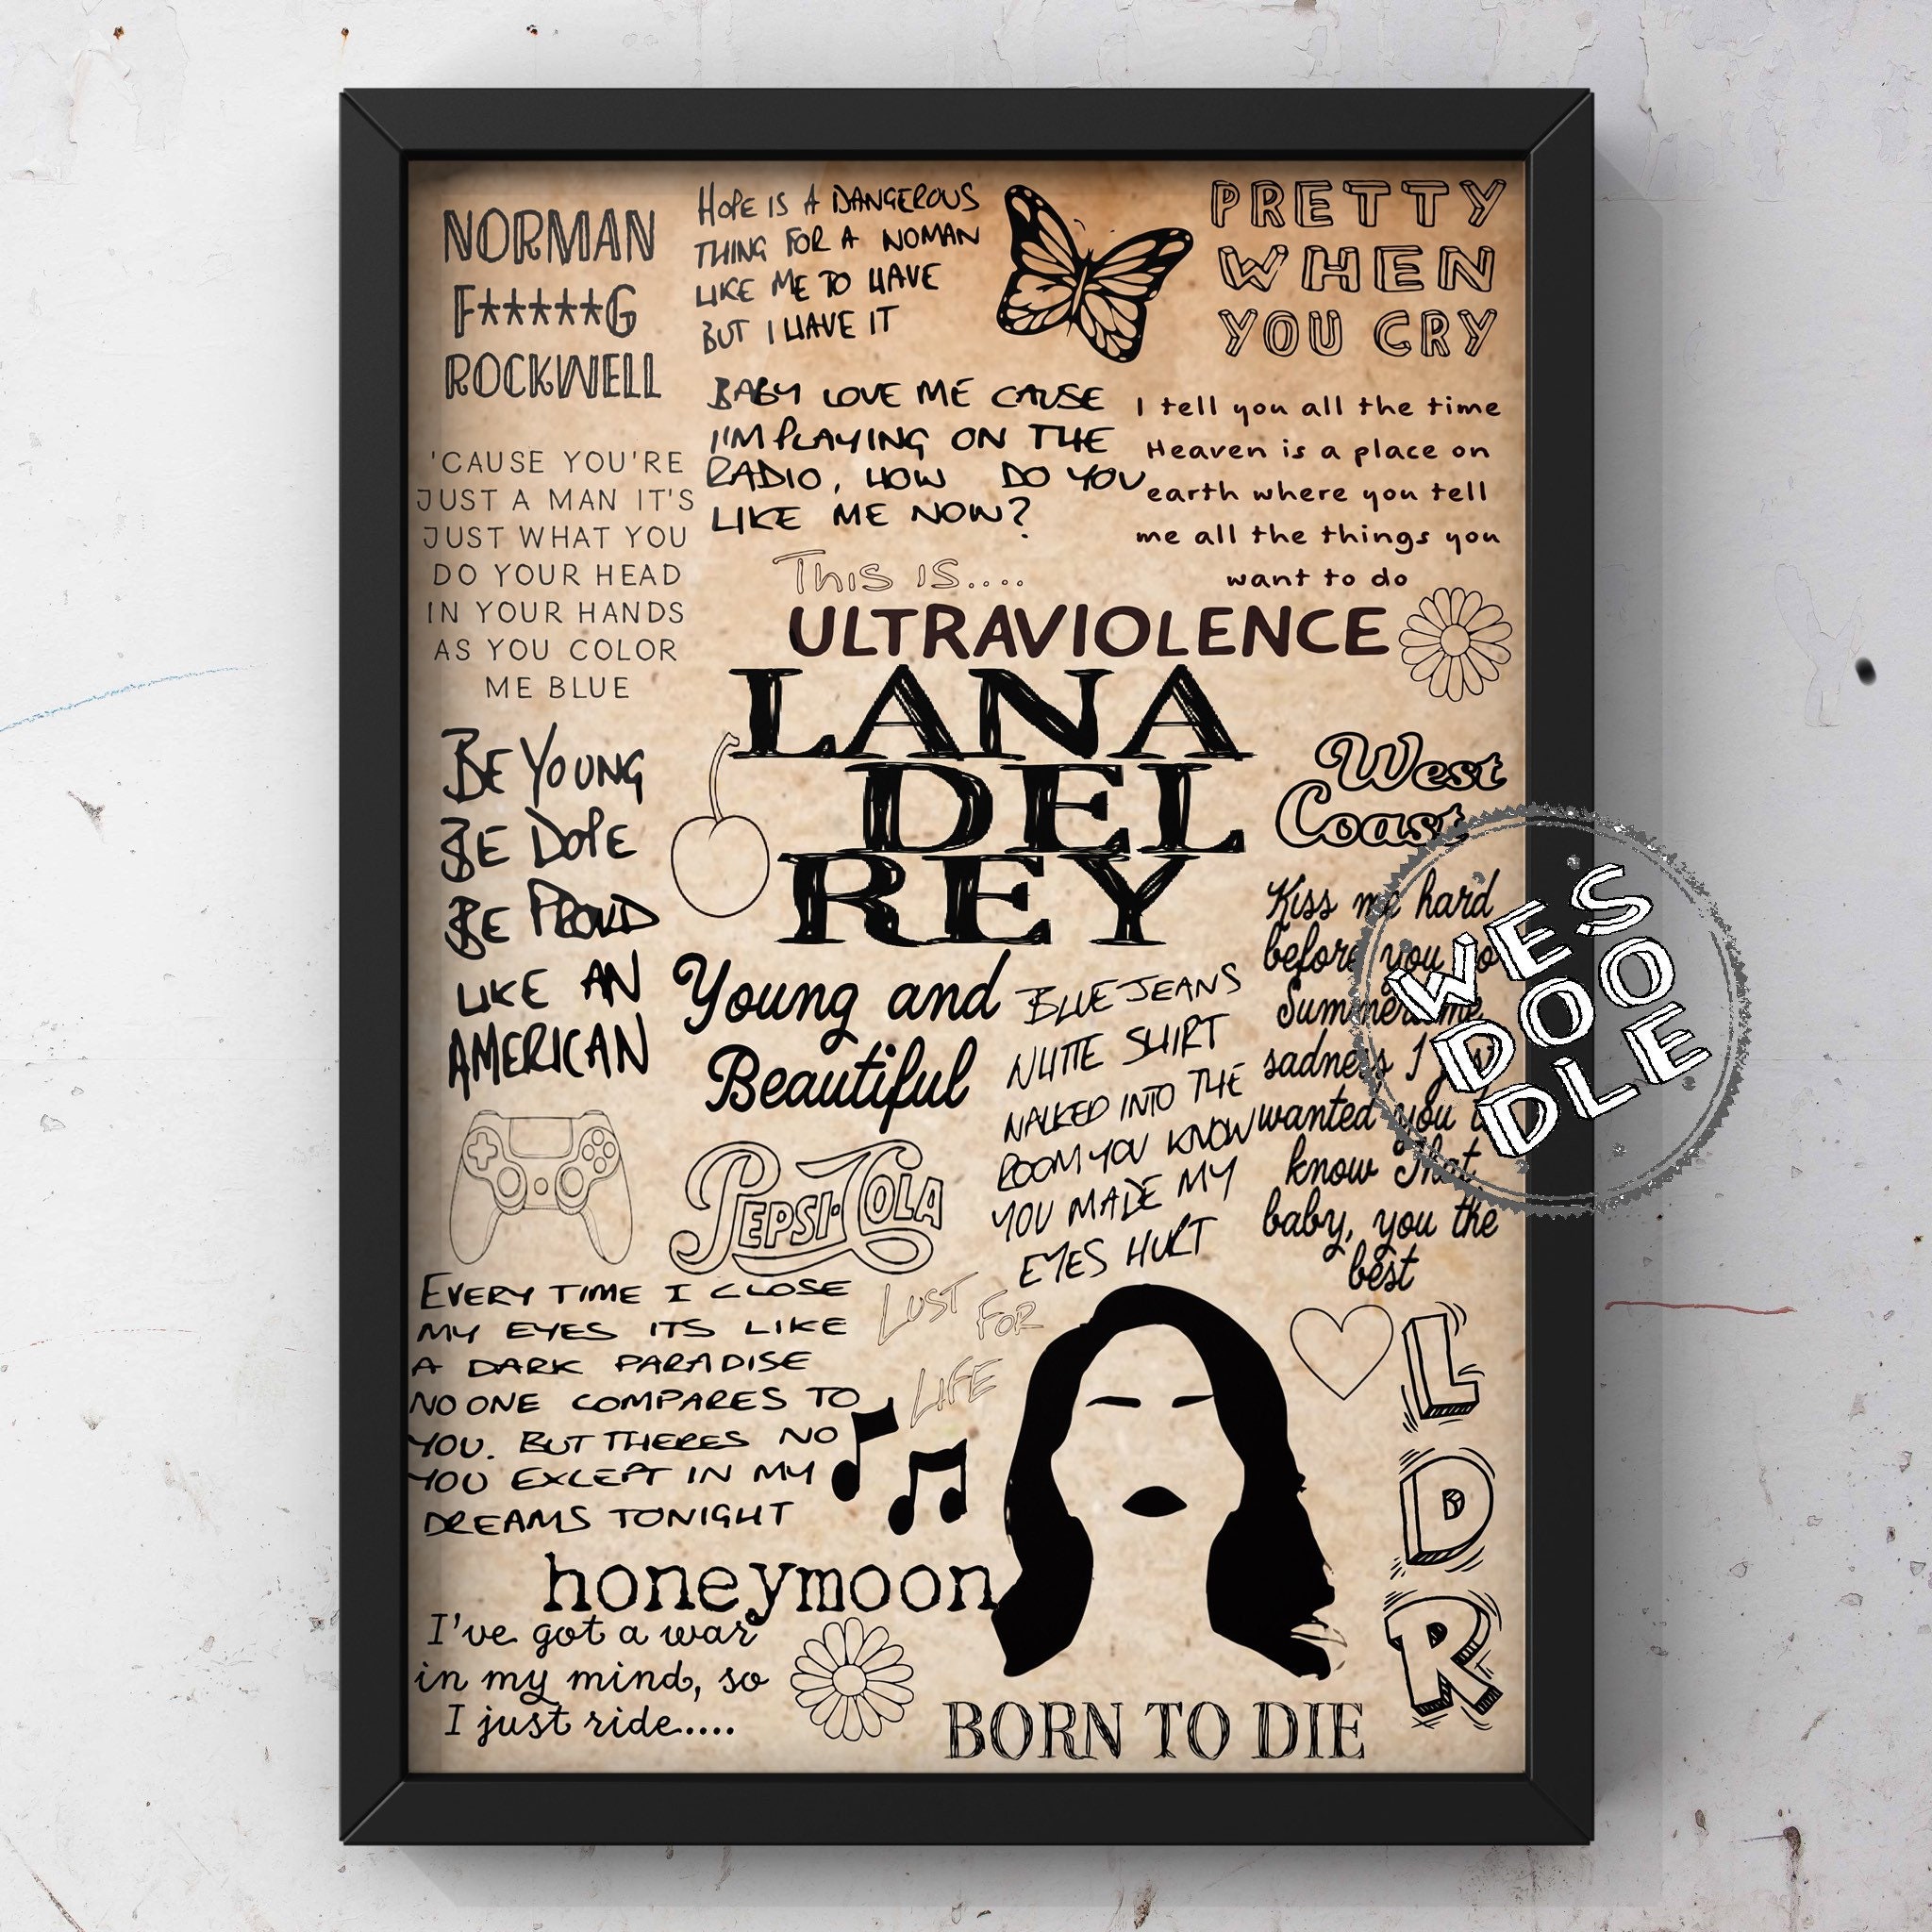 Dark Paradise By Lana Del Rey  Lana del rey lyrics, Lana del rey quotes,  Lana del rey songs